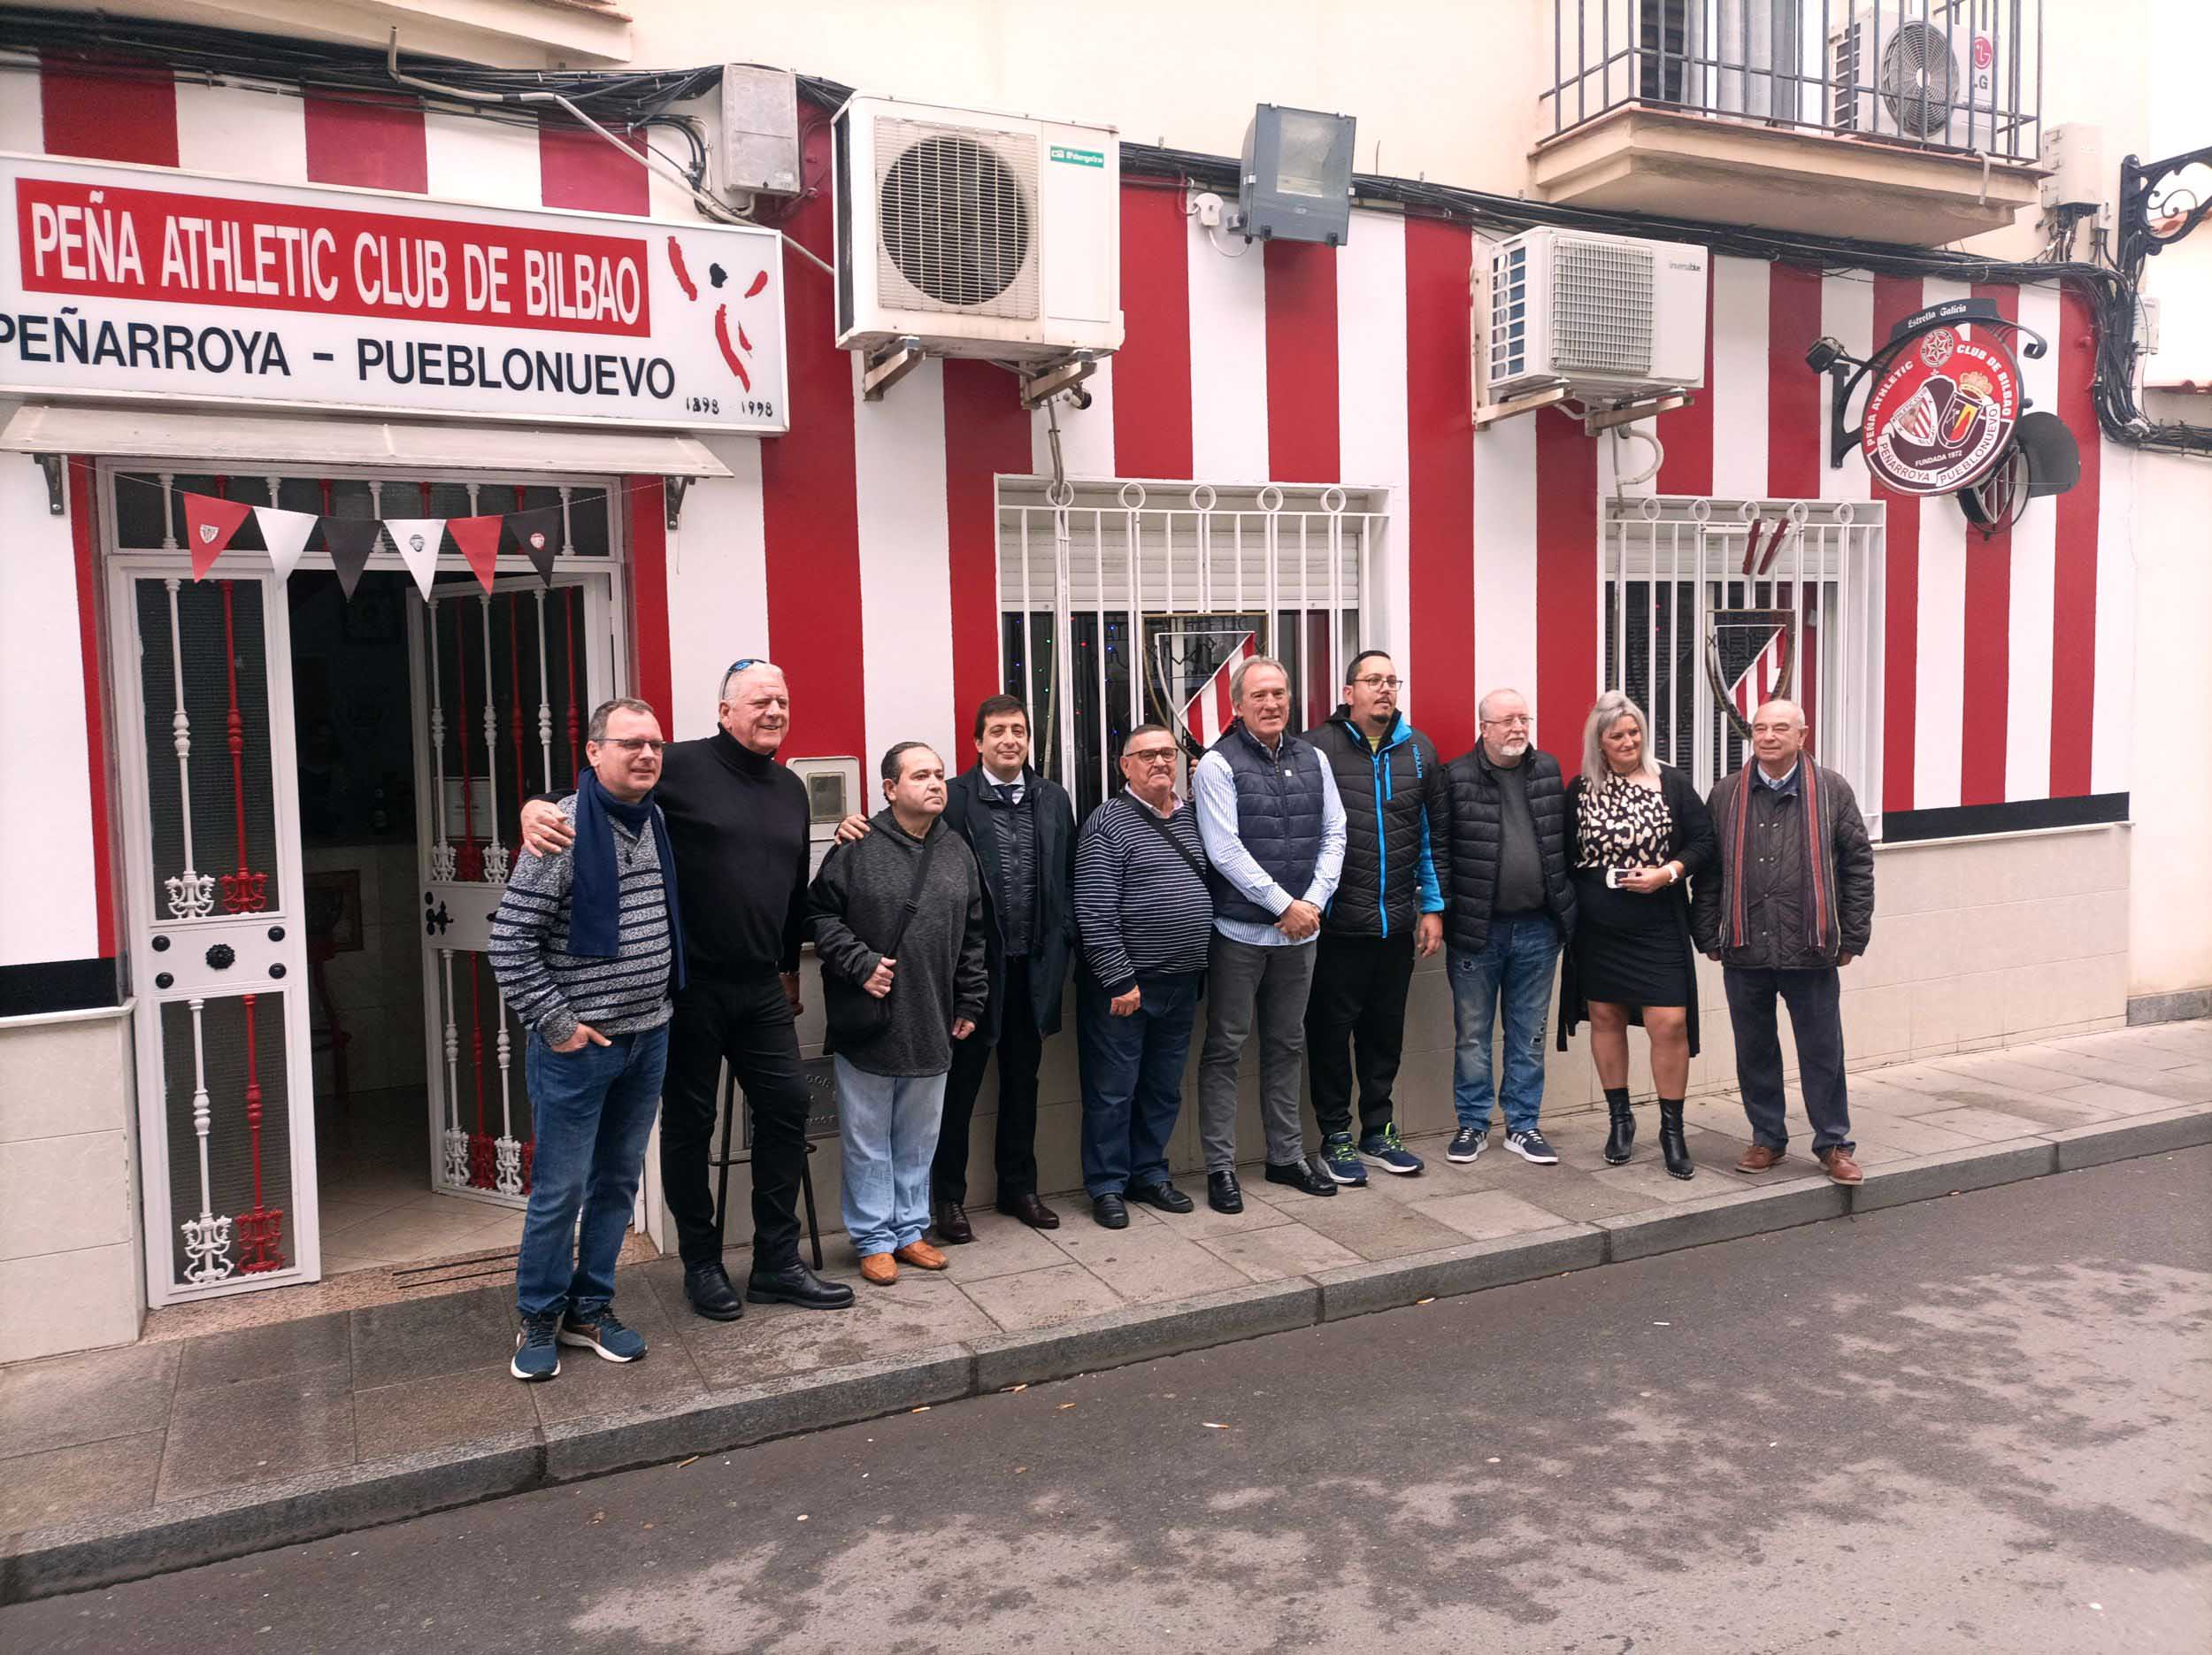 La Peña Athletic Club de Bilbao de Peñarroya-Pueblonuevo, recibe la visita de Andoni Goikoexea, ex defensa Central del Athletic Club y de la Selección Nacional